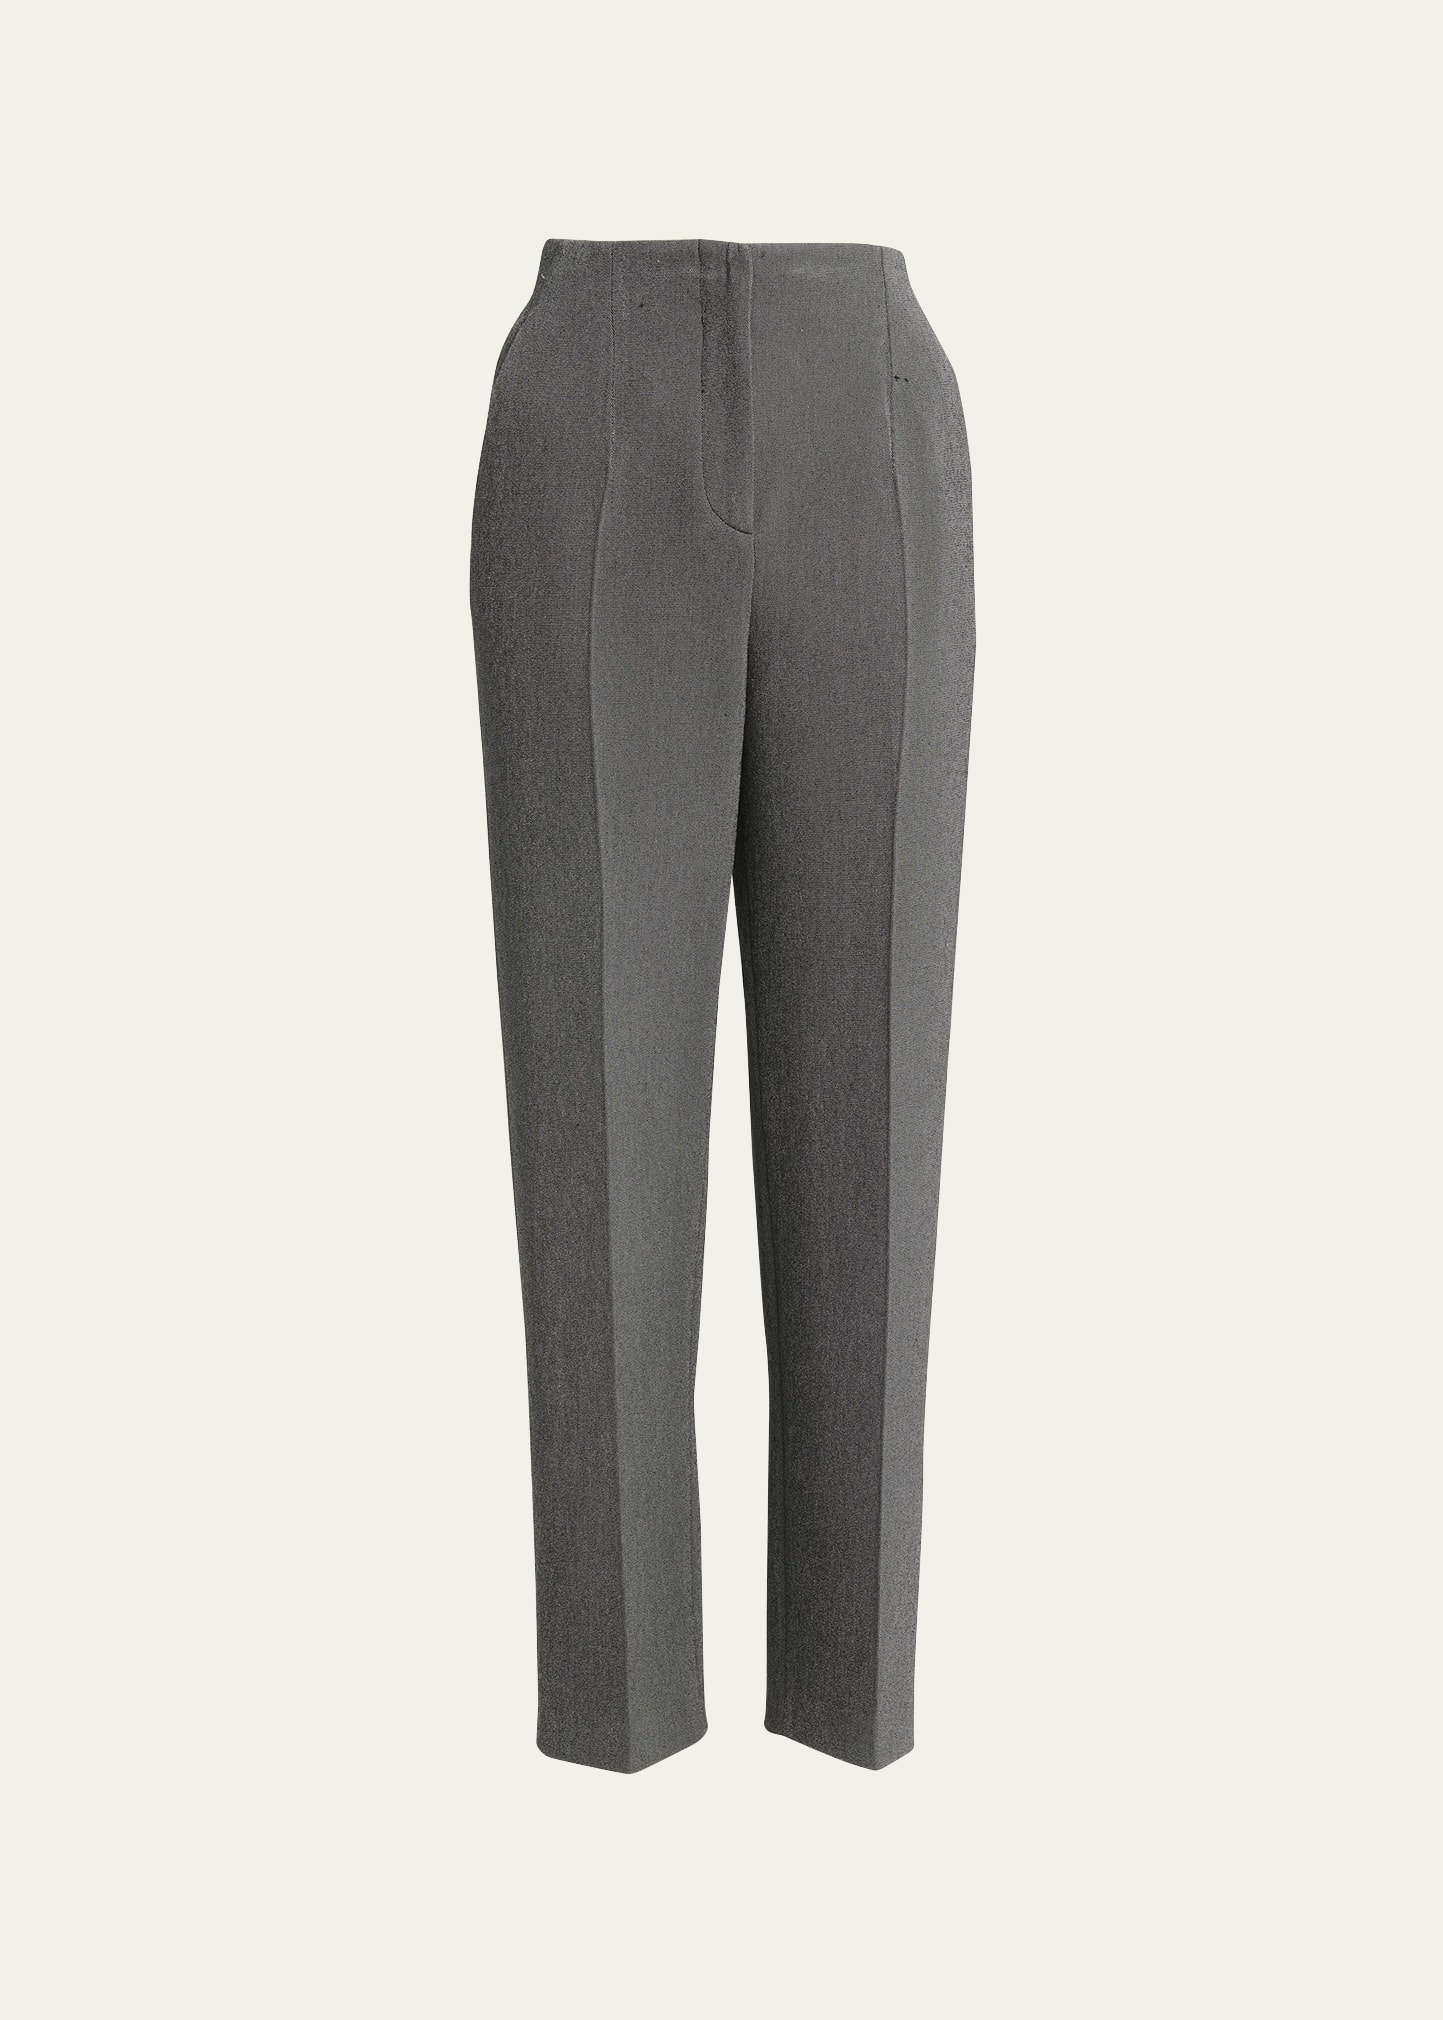 Giorgio Armani Textured Viscose Trousers In Dark Grey